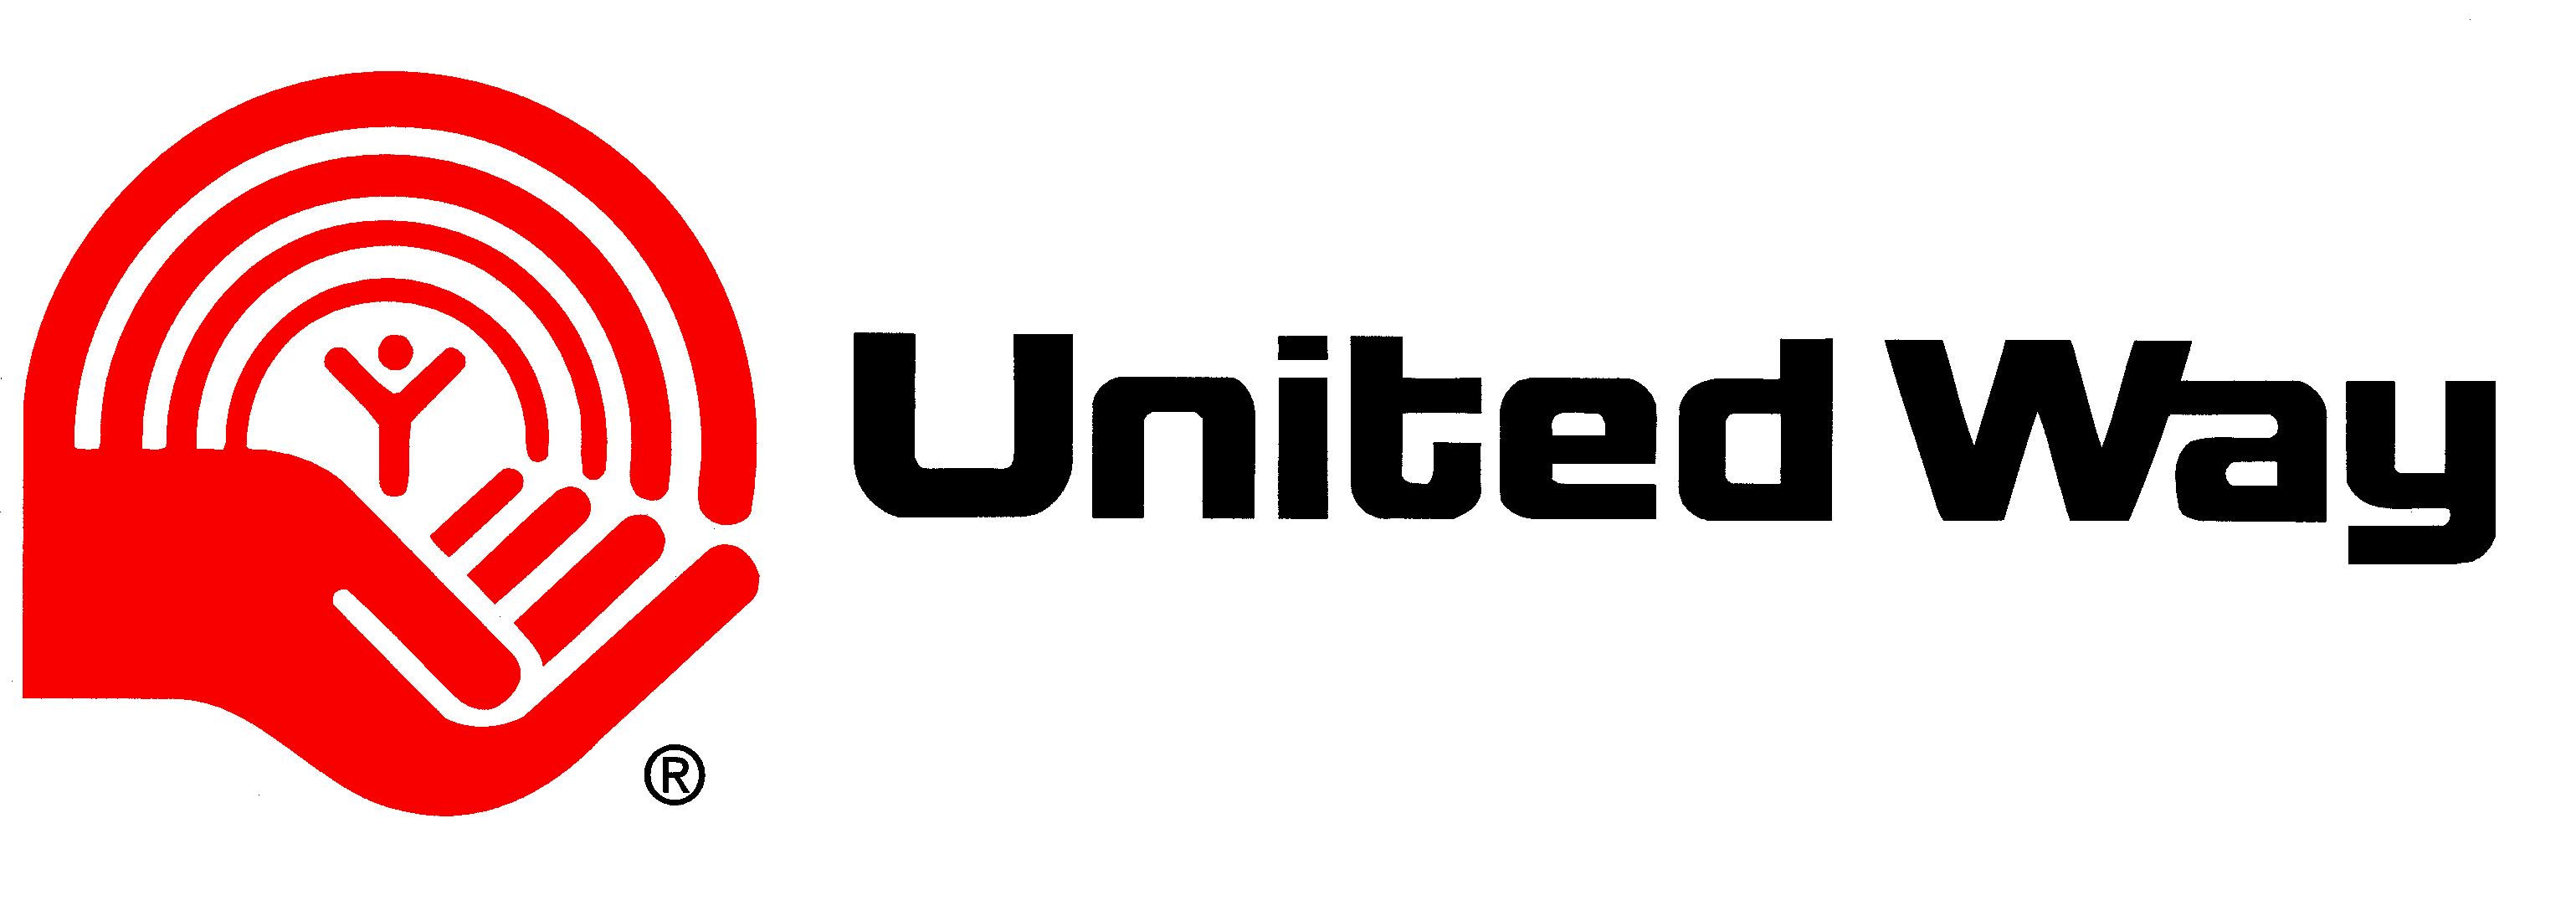 United Way Logo - united way logo